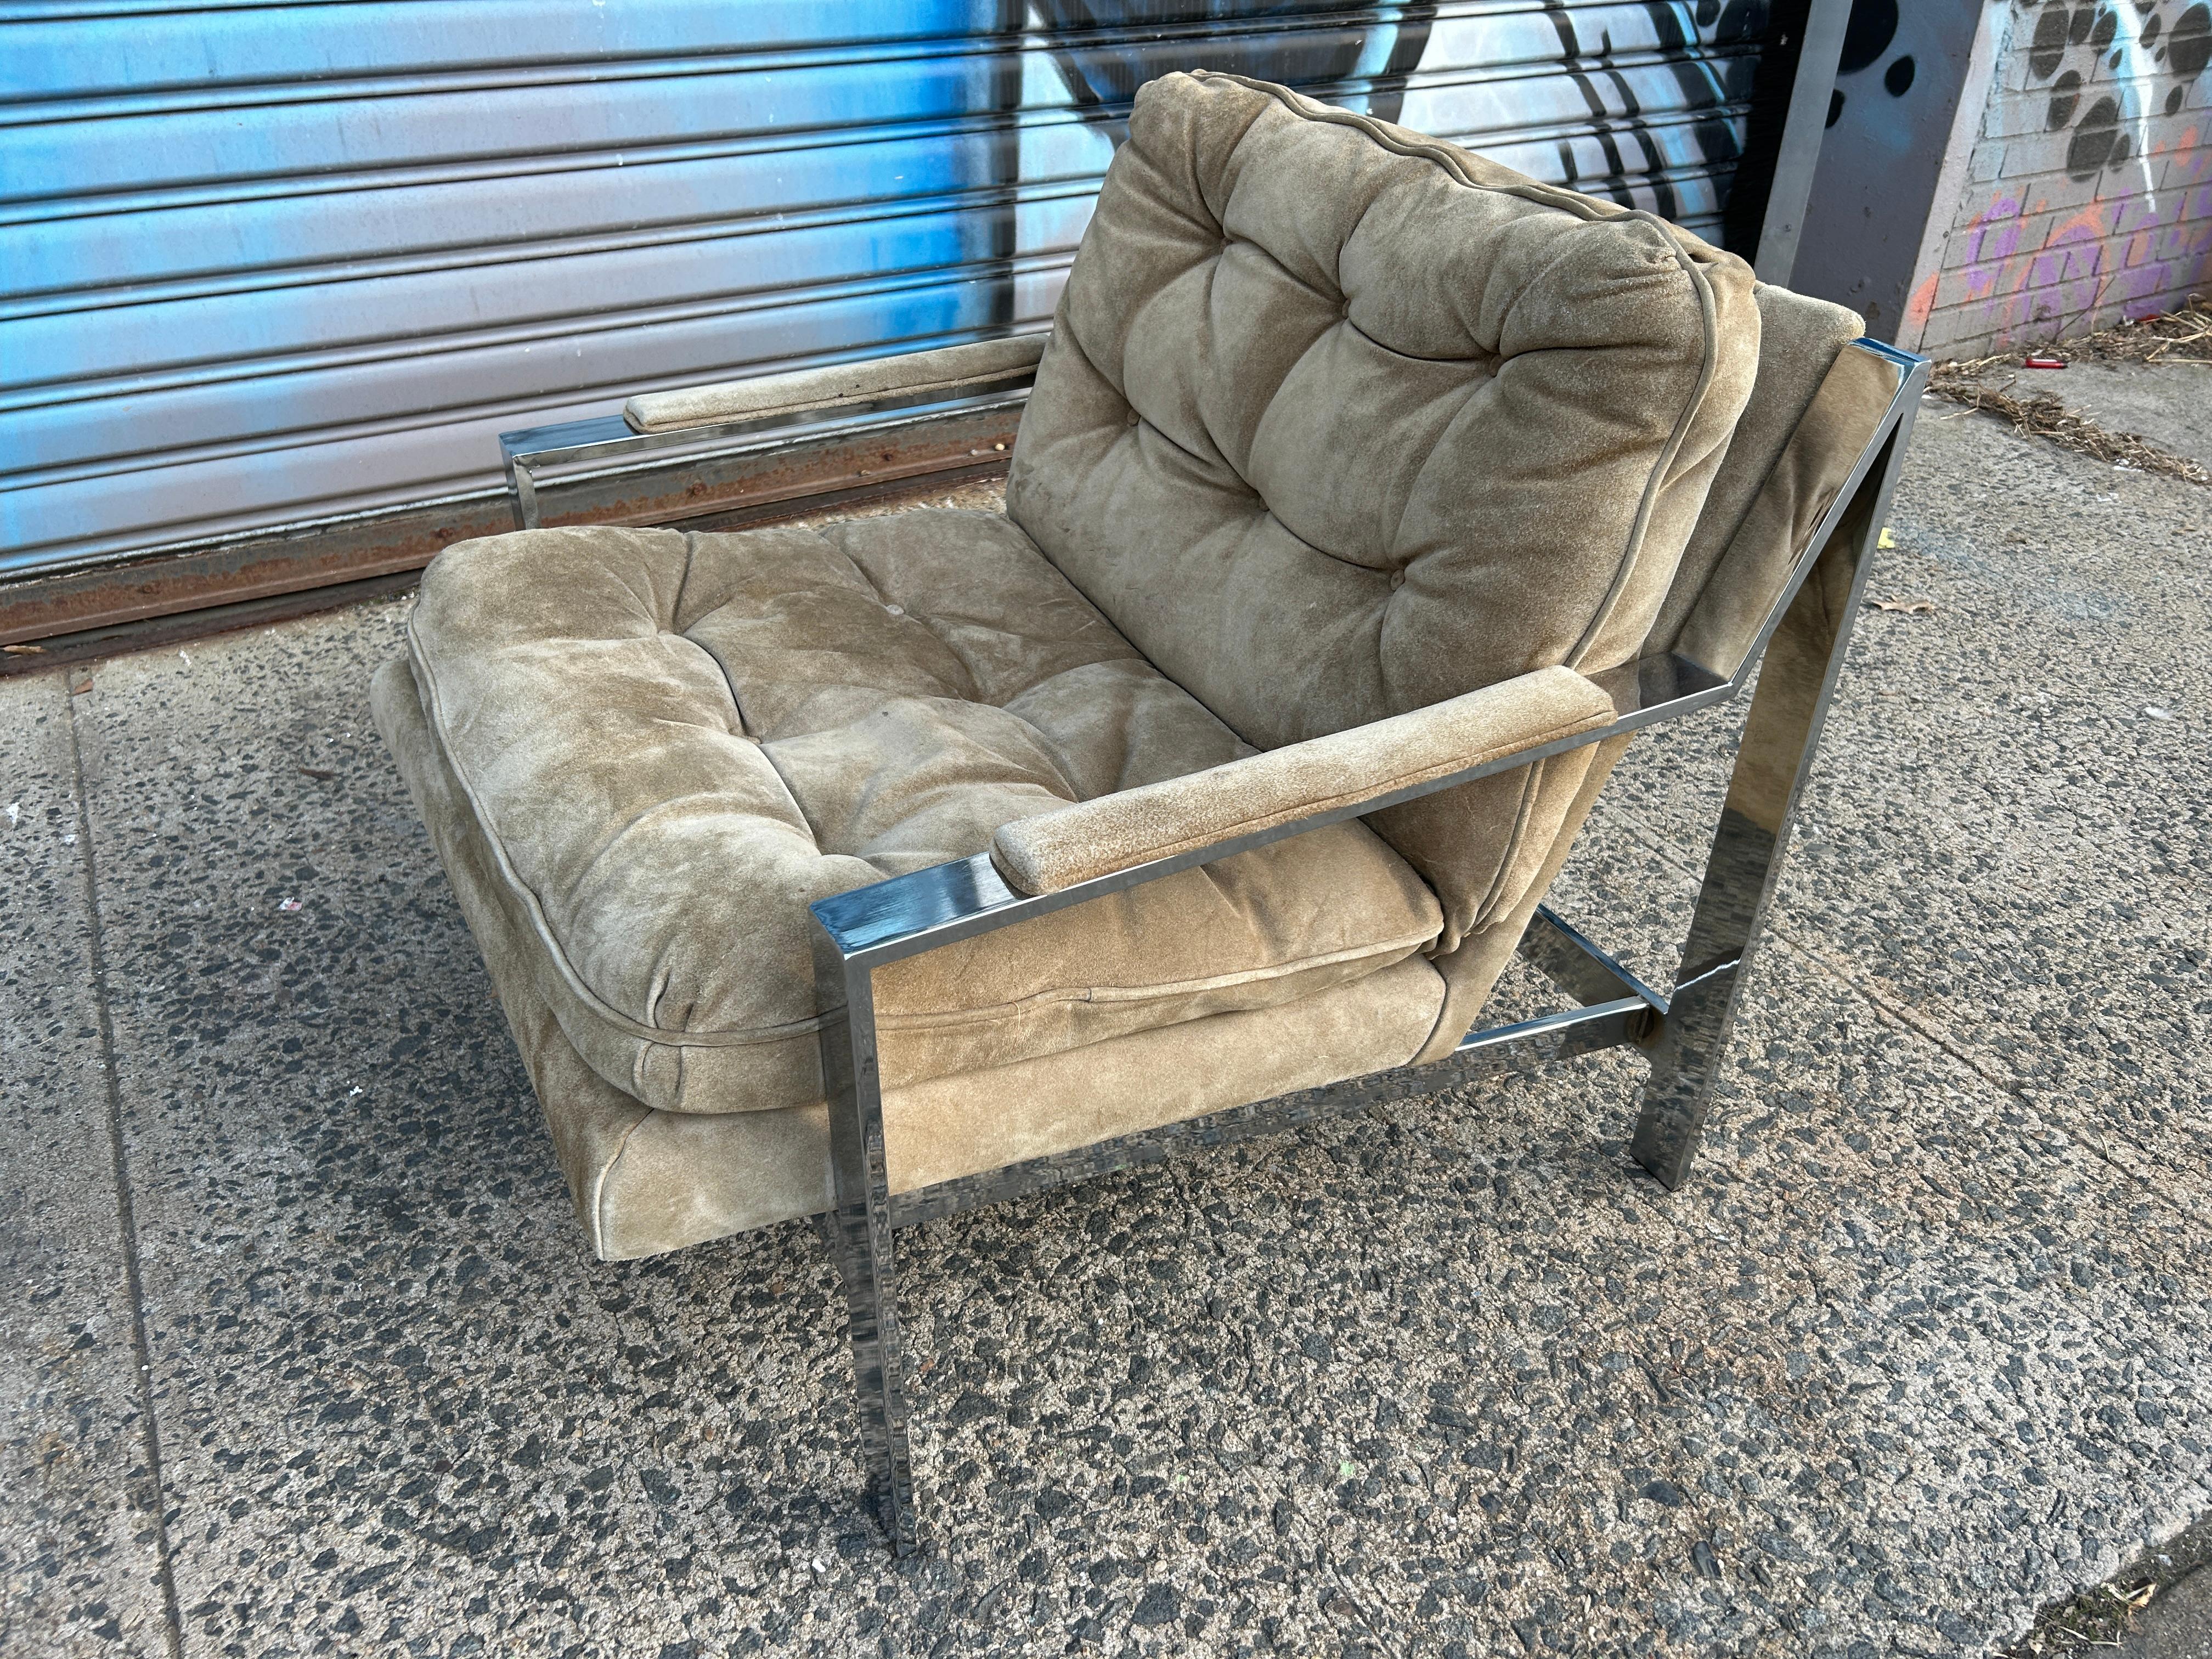 Nous vous présentons cette chaise de salon emblématique en chrome de Cy Mann.
Sellerie d'origine en cuir et daim beige. Cy Mann est surtout connu pour cette chaise longue chromée et d'autres designs des années 1970, comme ceux de Milo Baughman et